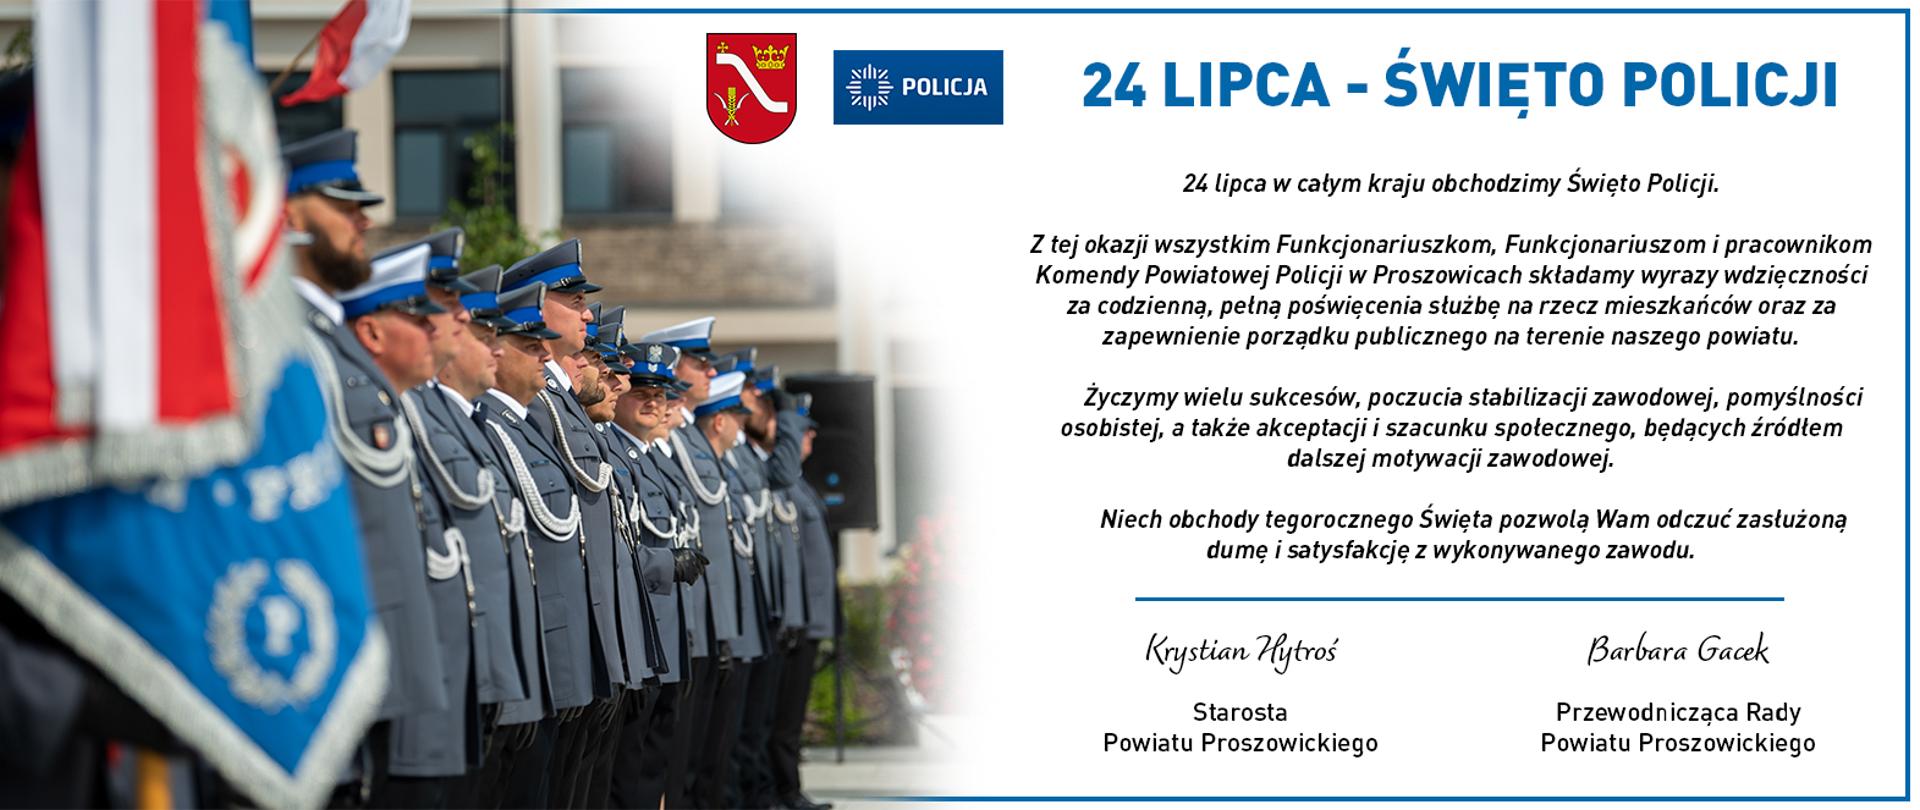 Na jasnym tle życzenia z okazji Święta Policji, pośrodku herb Powiatu Proszowickiego oraz logo Policji, z lewej strony szereg umundurowanych policjantów podczas zbiórki. 